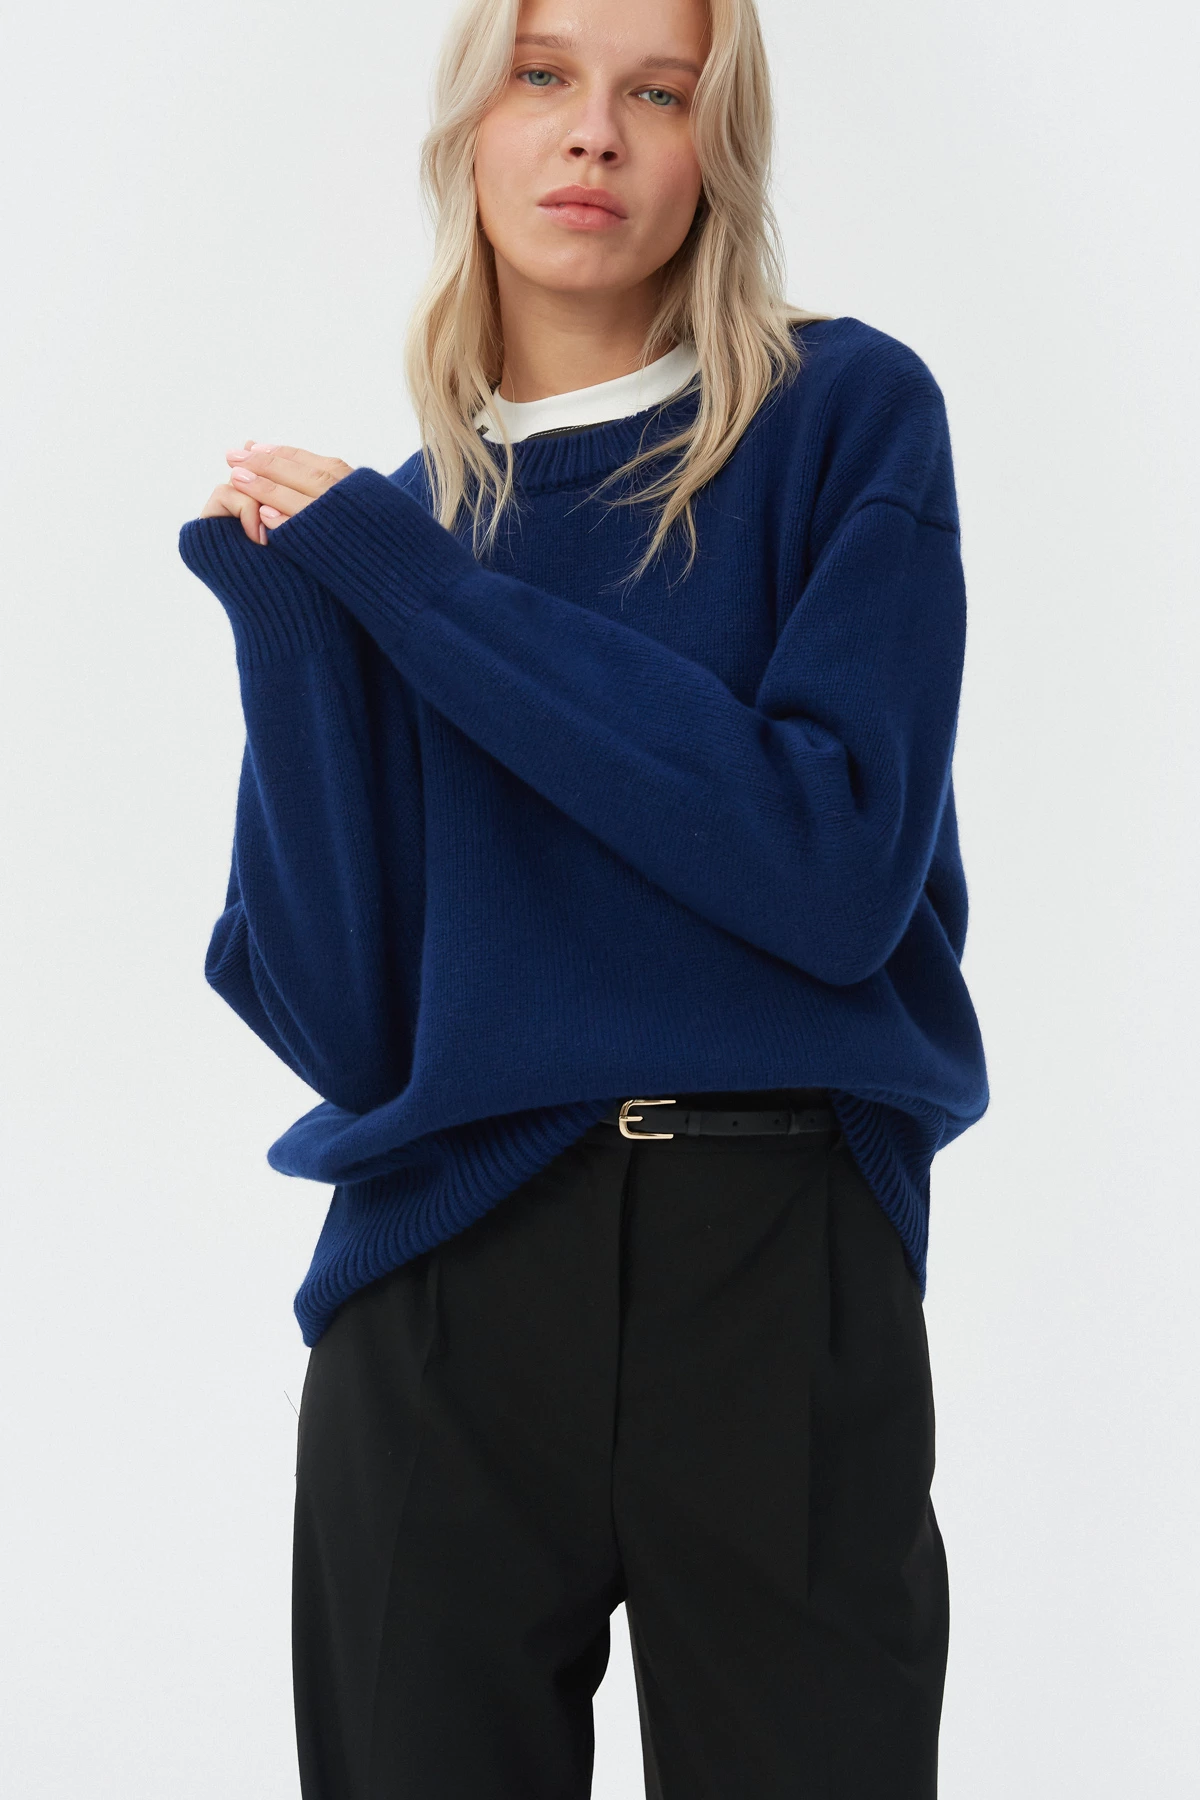 Cashmere dark blue sweater, photo 3